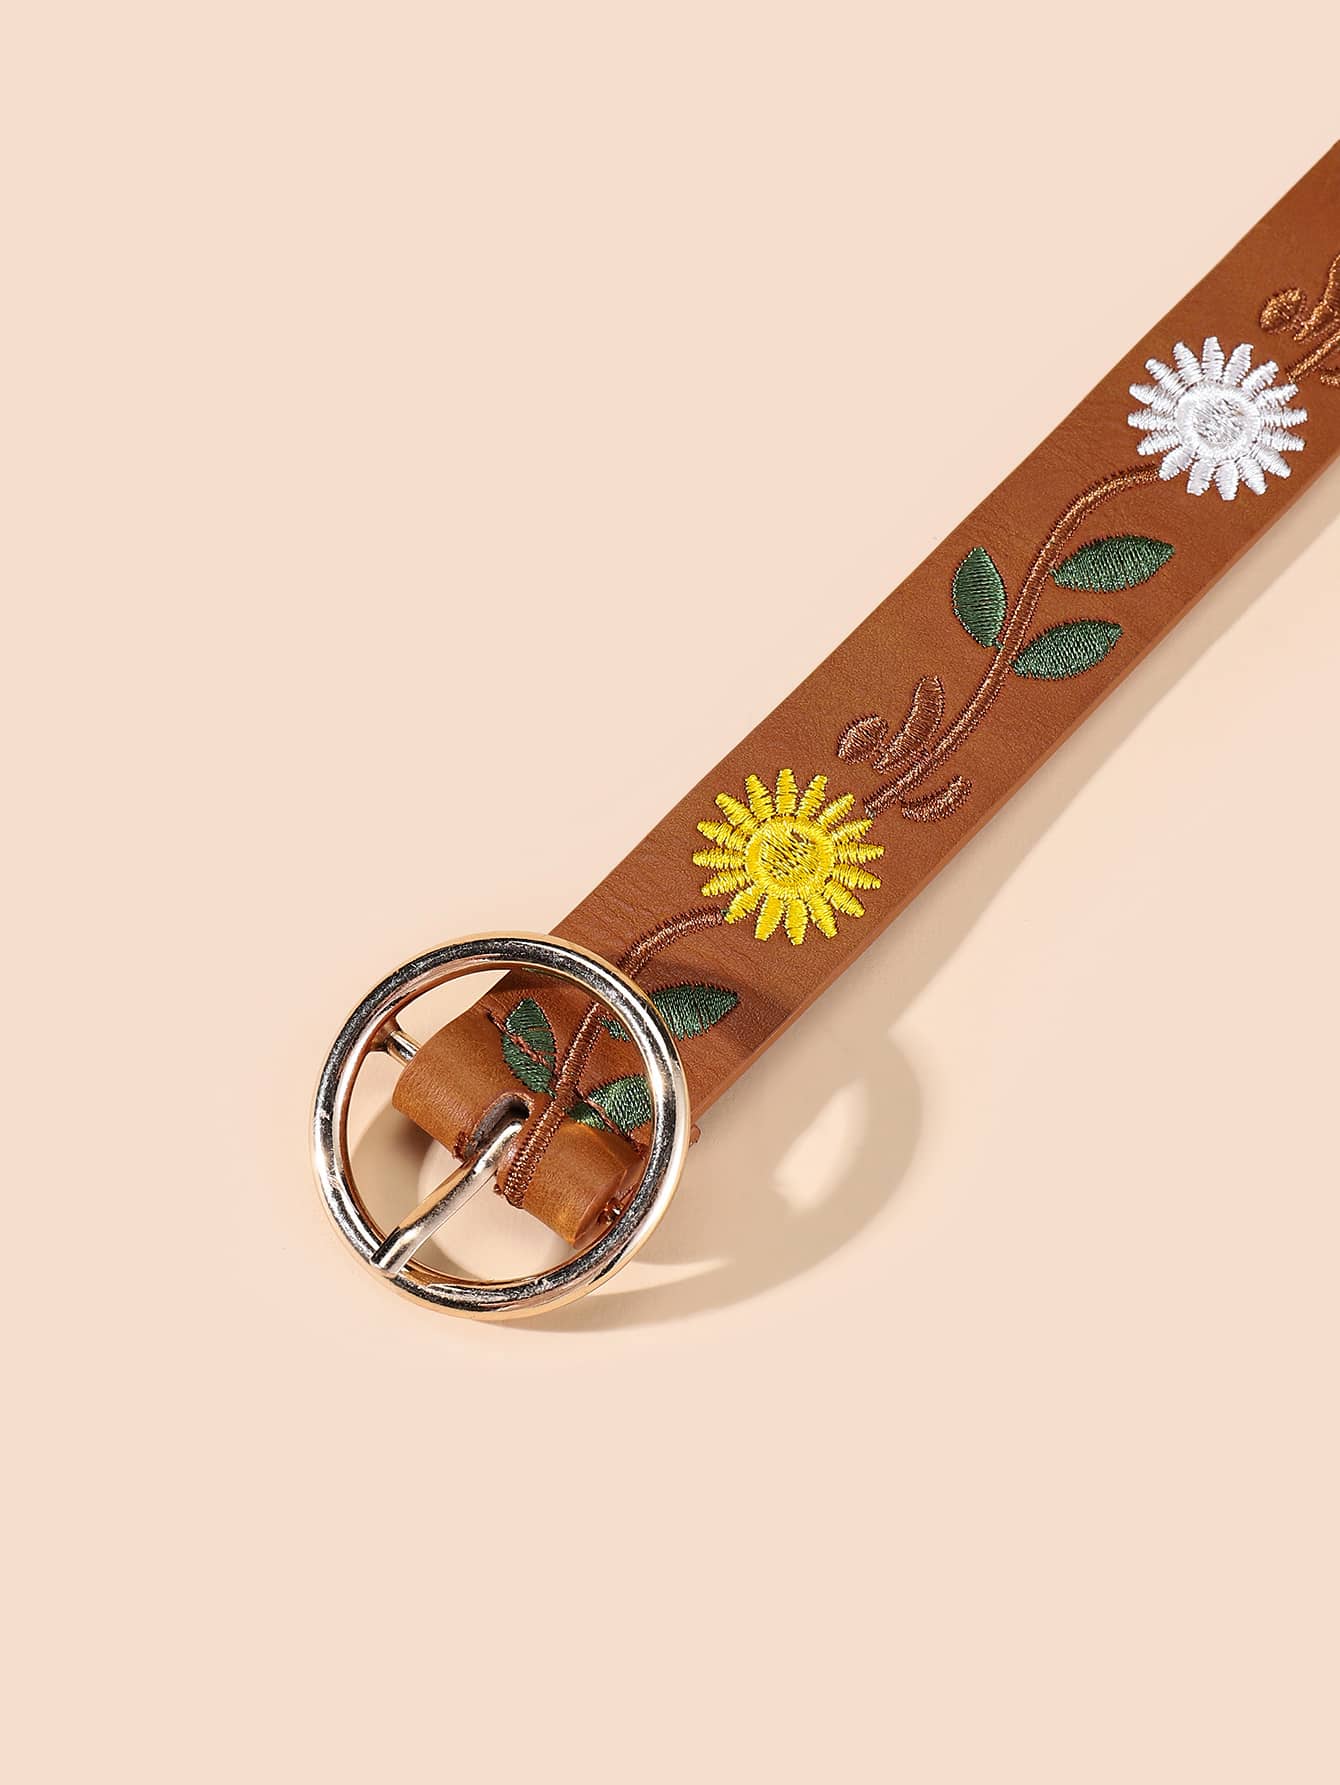 Cinturón con bordado de flores y perforador